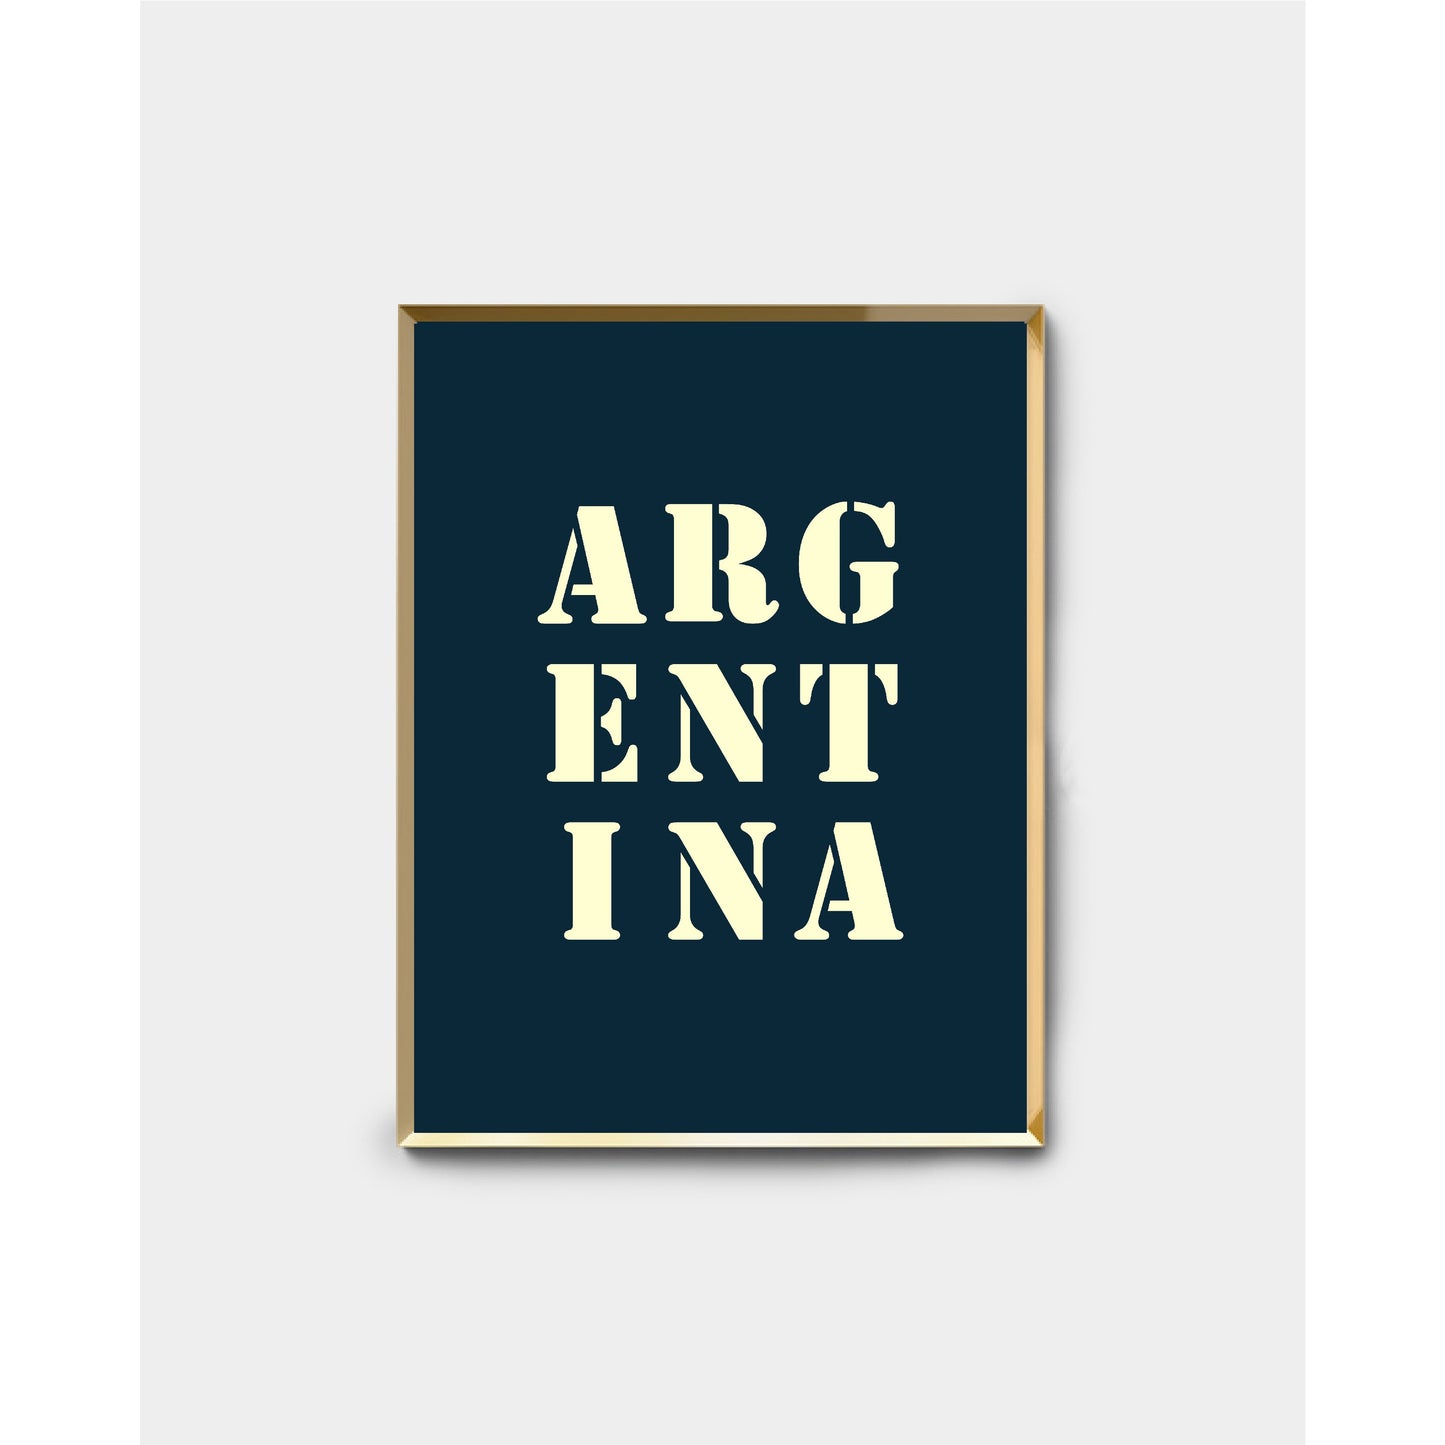 Midnight blue "Argentina" poster